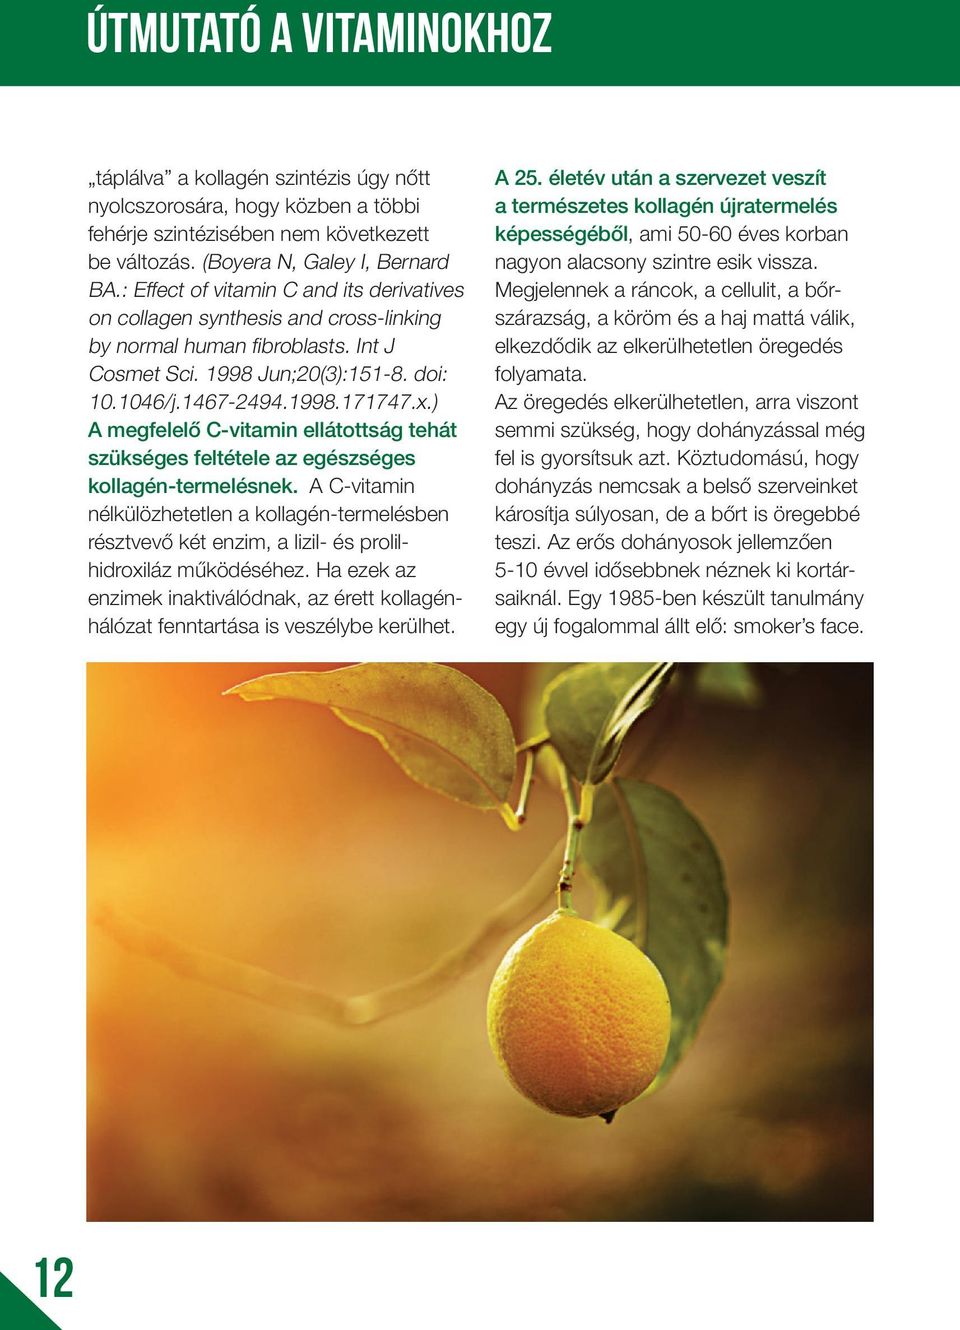 ) A megfelelő C-vitamin ellátottság tehát szükséges feltétele az egészséges kollagén-termelésnek.